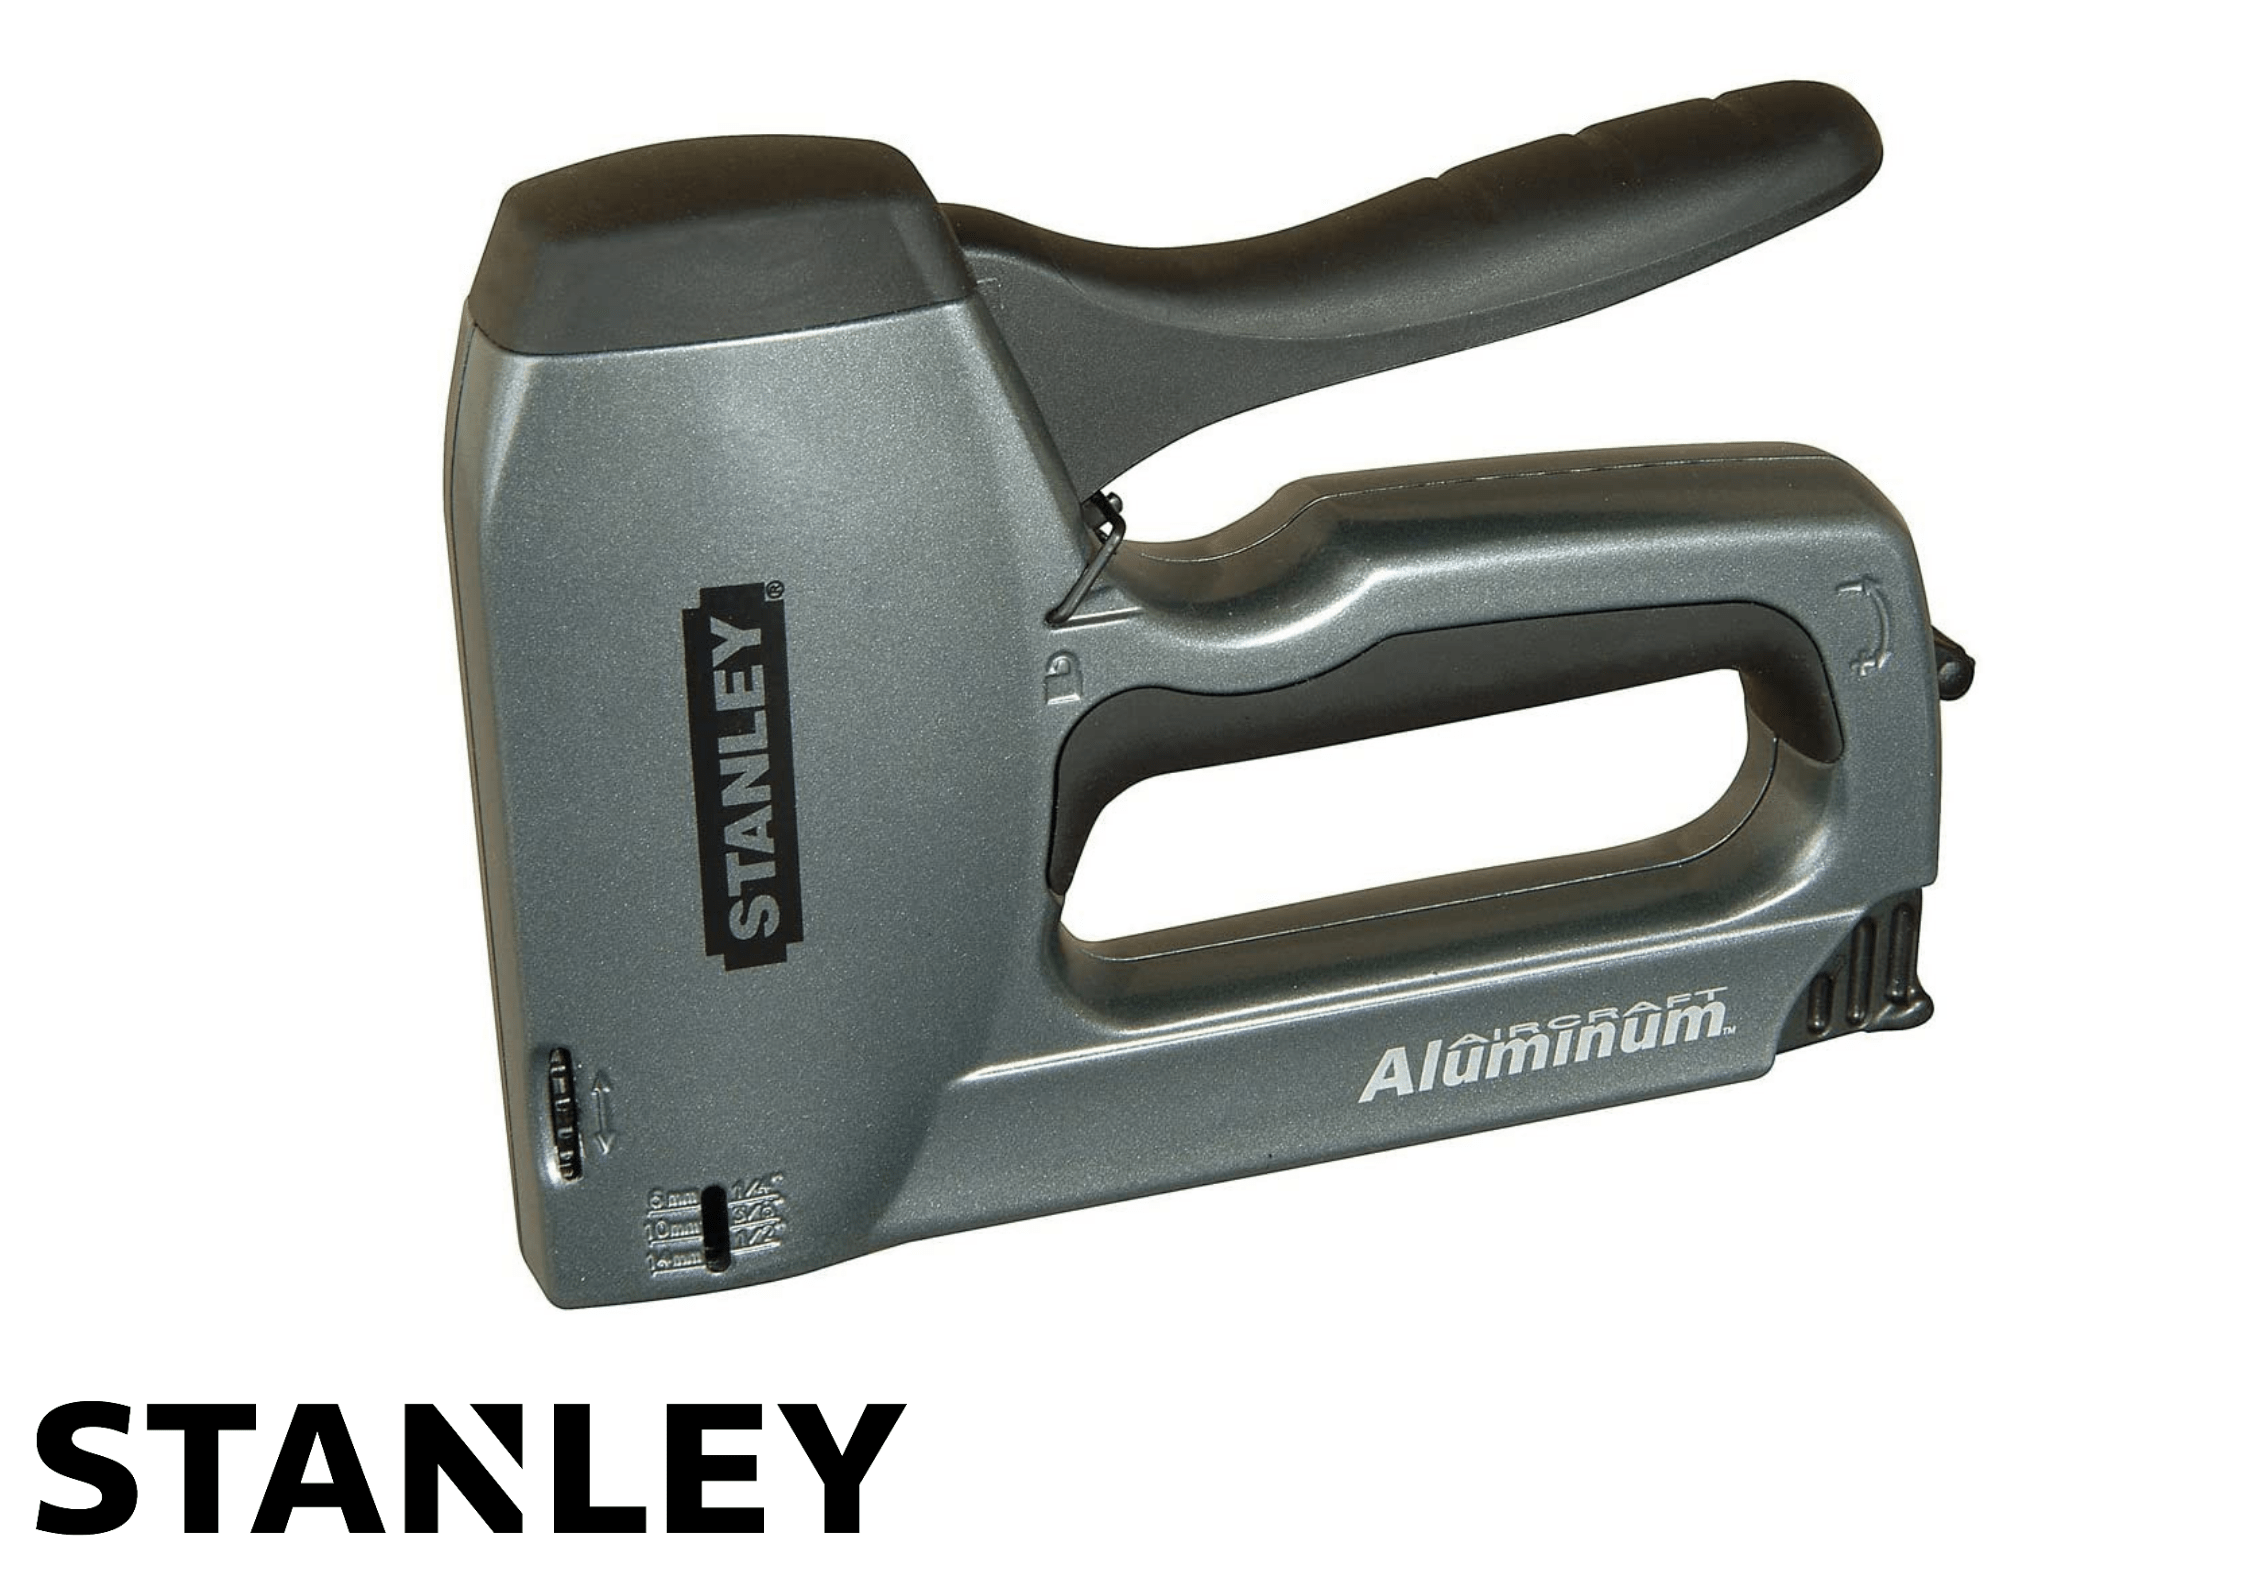 Stanley 0TR250 Heavy-Duty Staple/Nail Gun + 1000 x HD14mm Staples 03253560050078 IUK00992 Stanley HD Stapler + 1000 x HD14mm Staples | insulationuk.co.uk